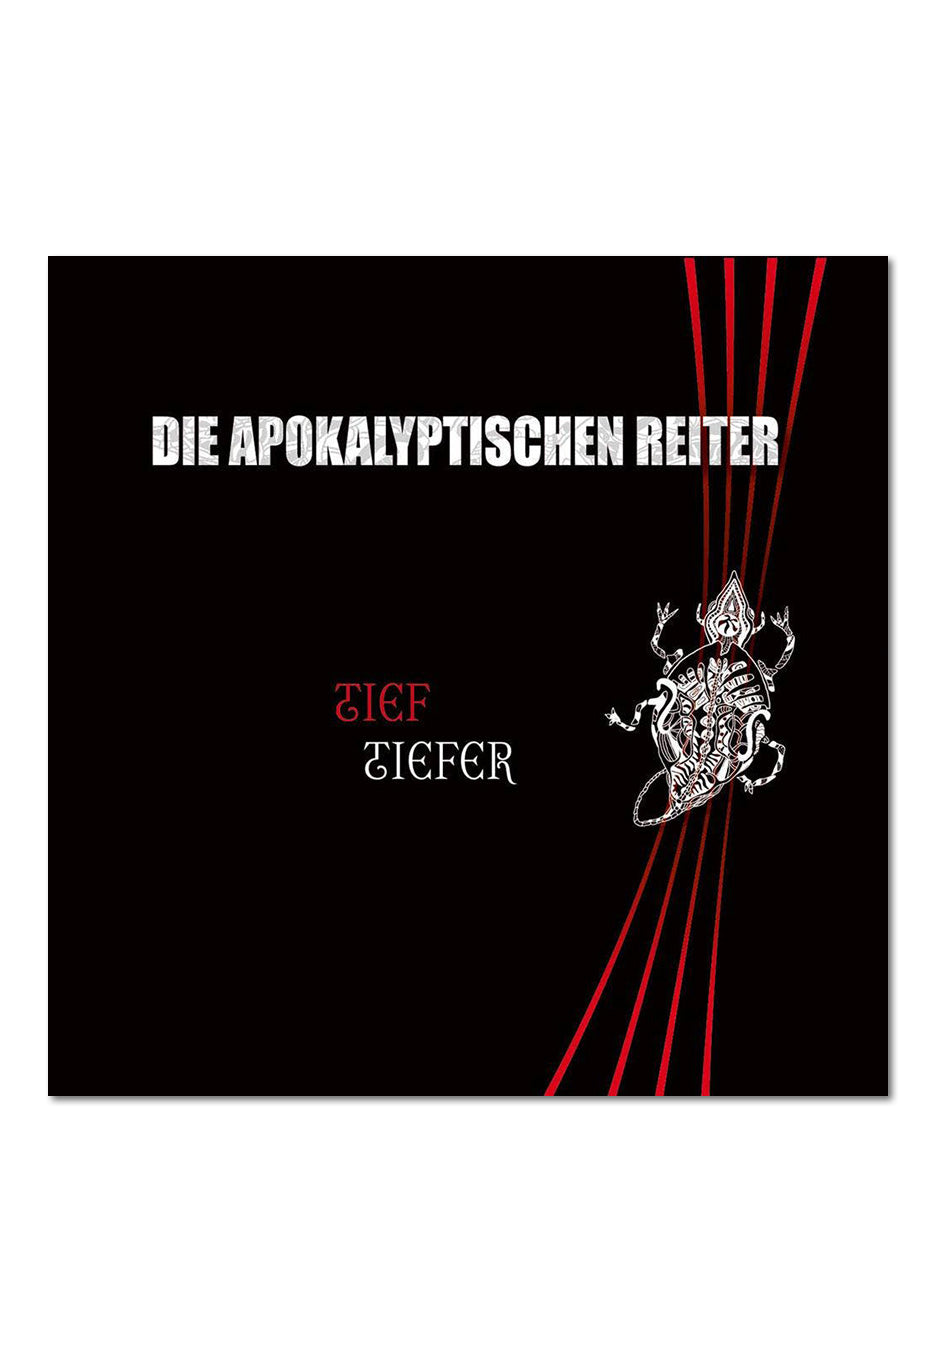 Die Apokalyptischen Reiter - Tief.Tiefer. - Digipak 2 CD